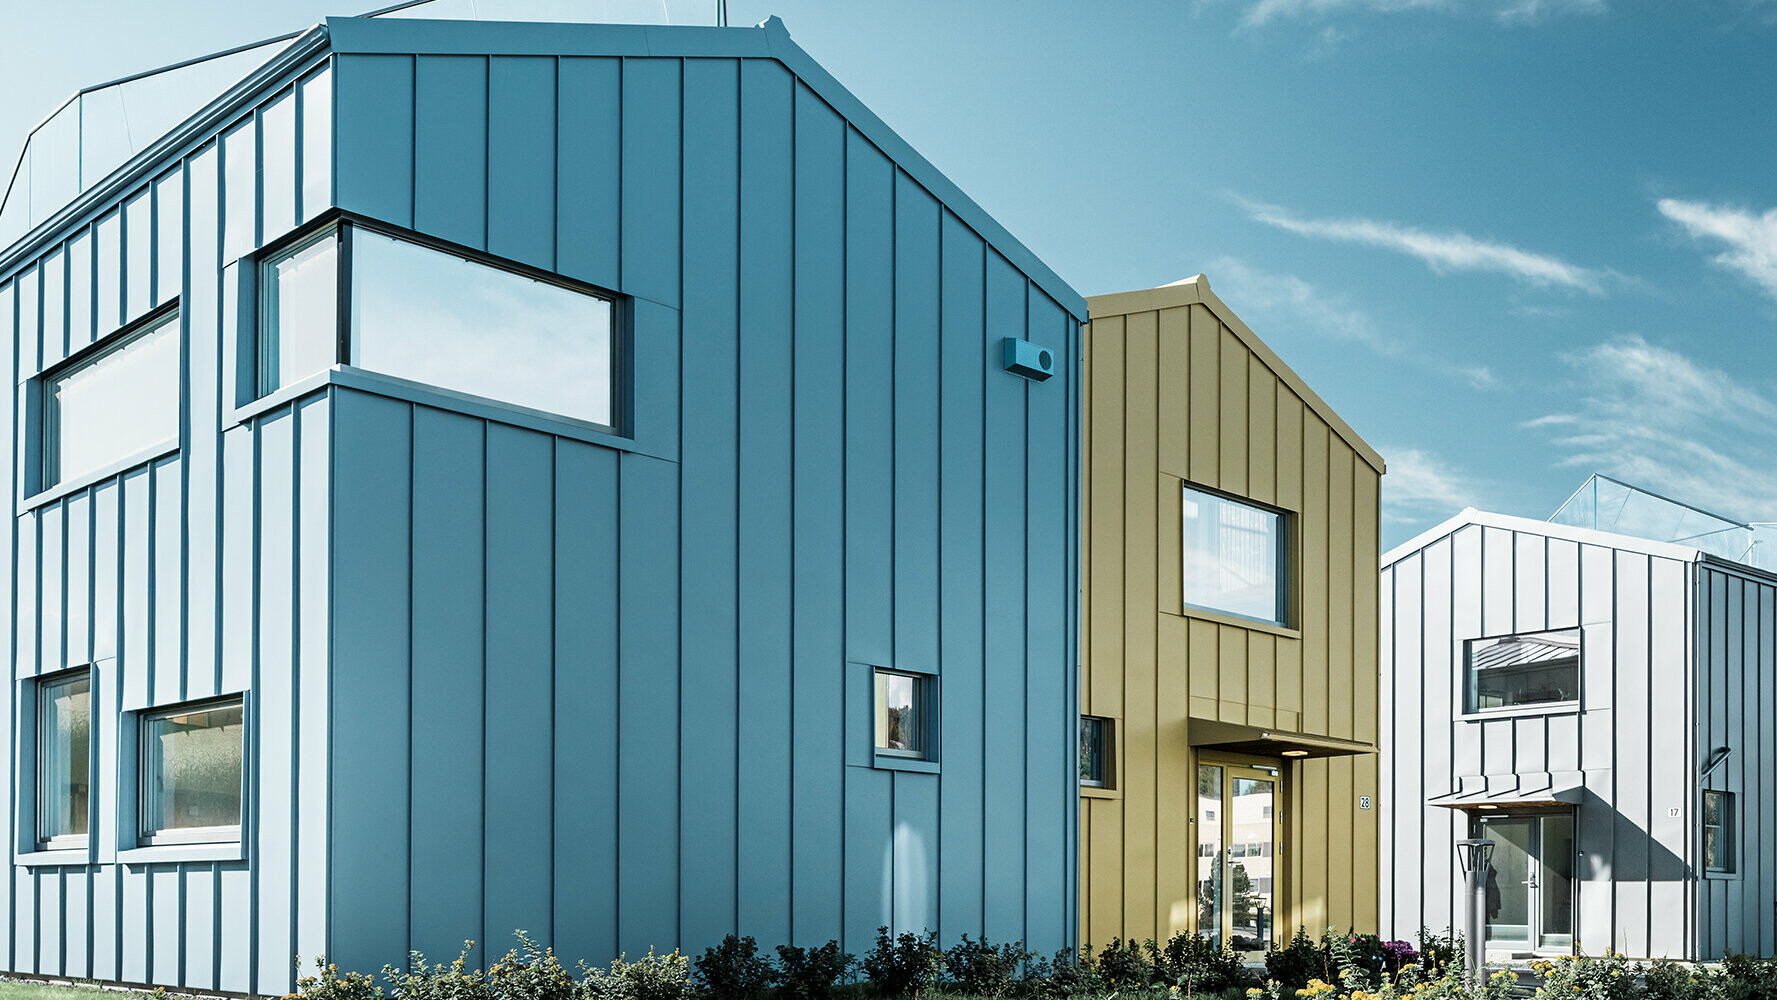 Des maisons individuelles au sein d'un lotissement aux toitures et façades colorés en aluminium